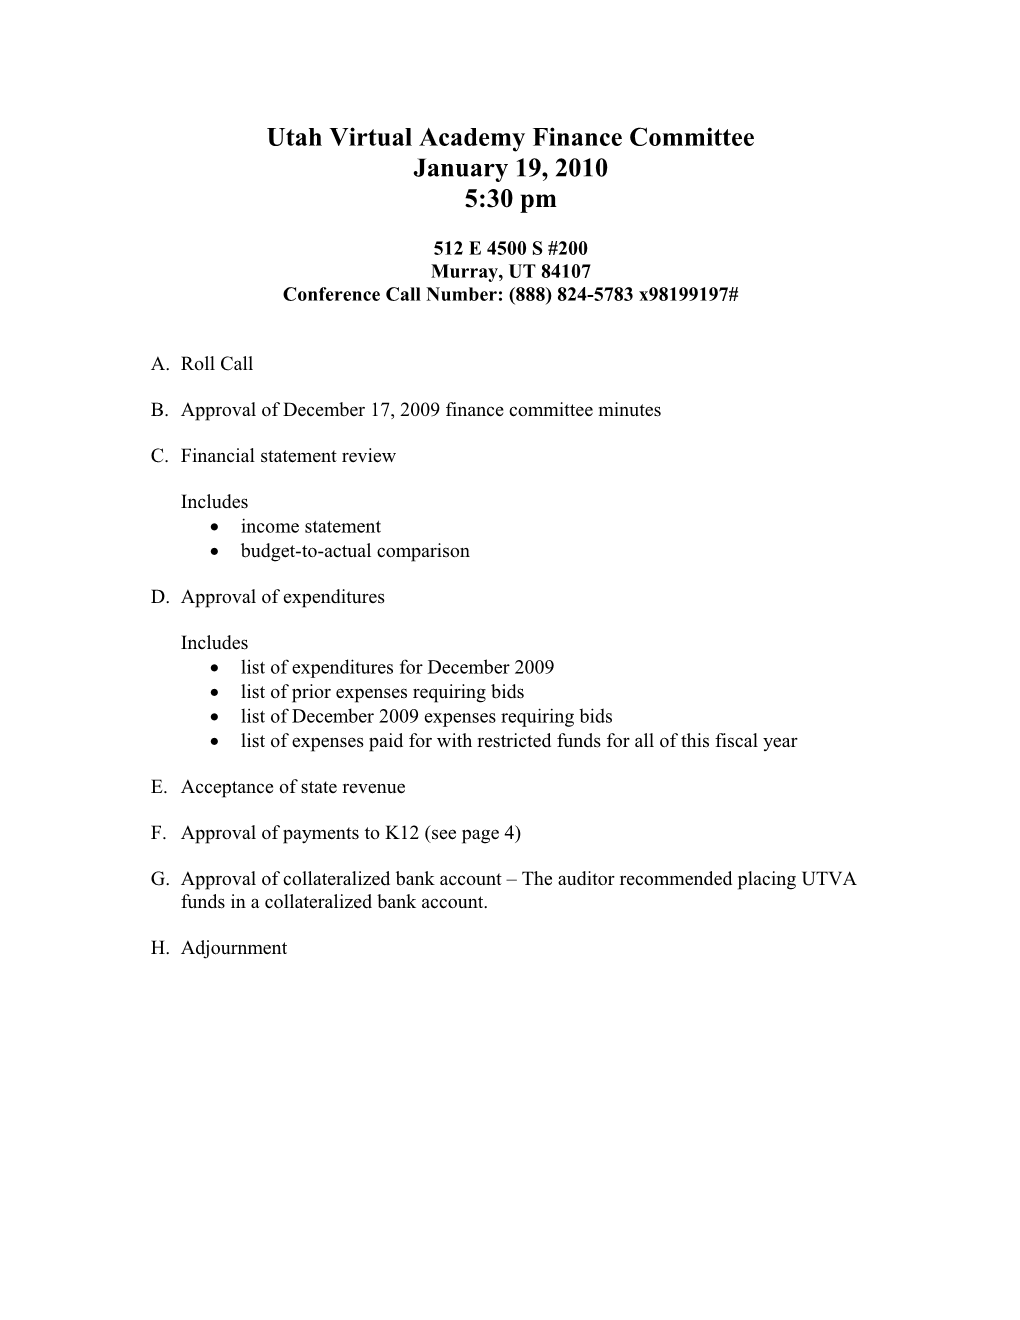 Utah Virtual Academy Finance Committee Meeting Agenda